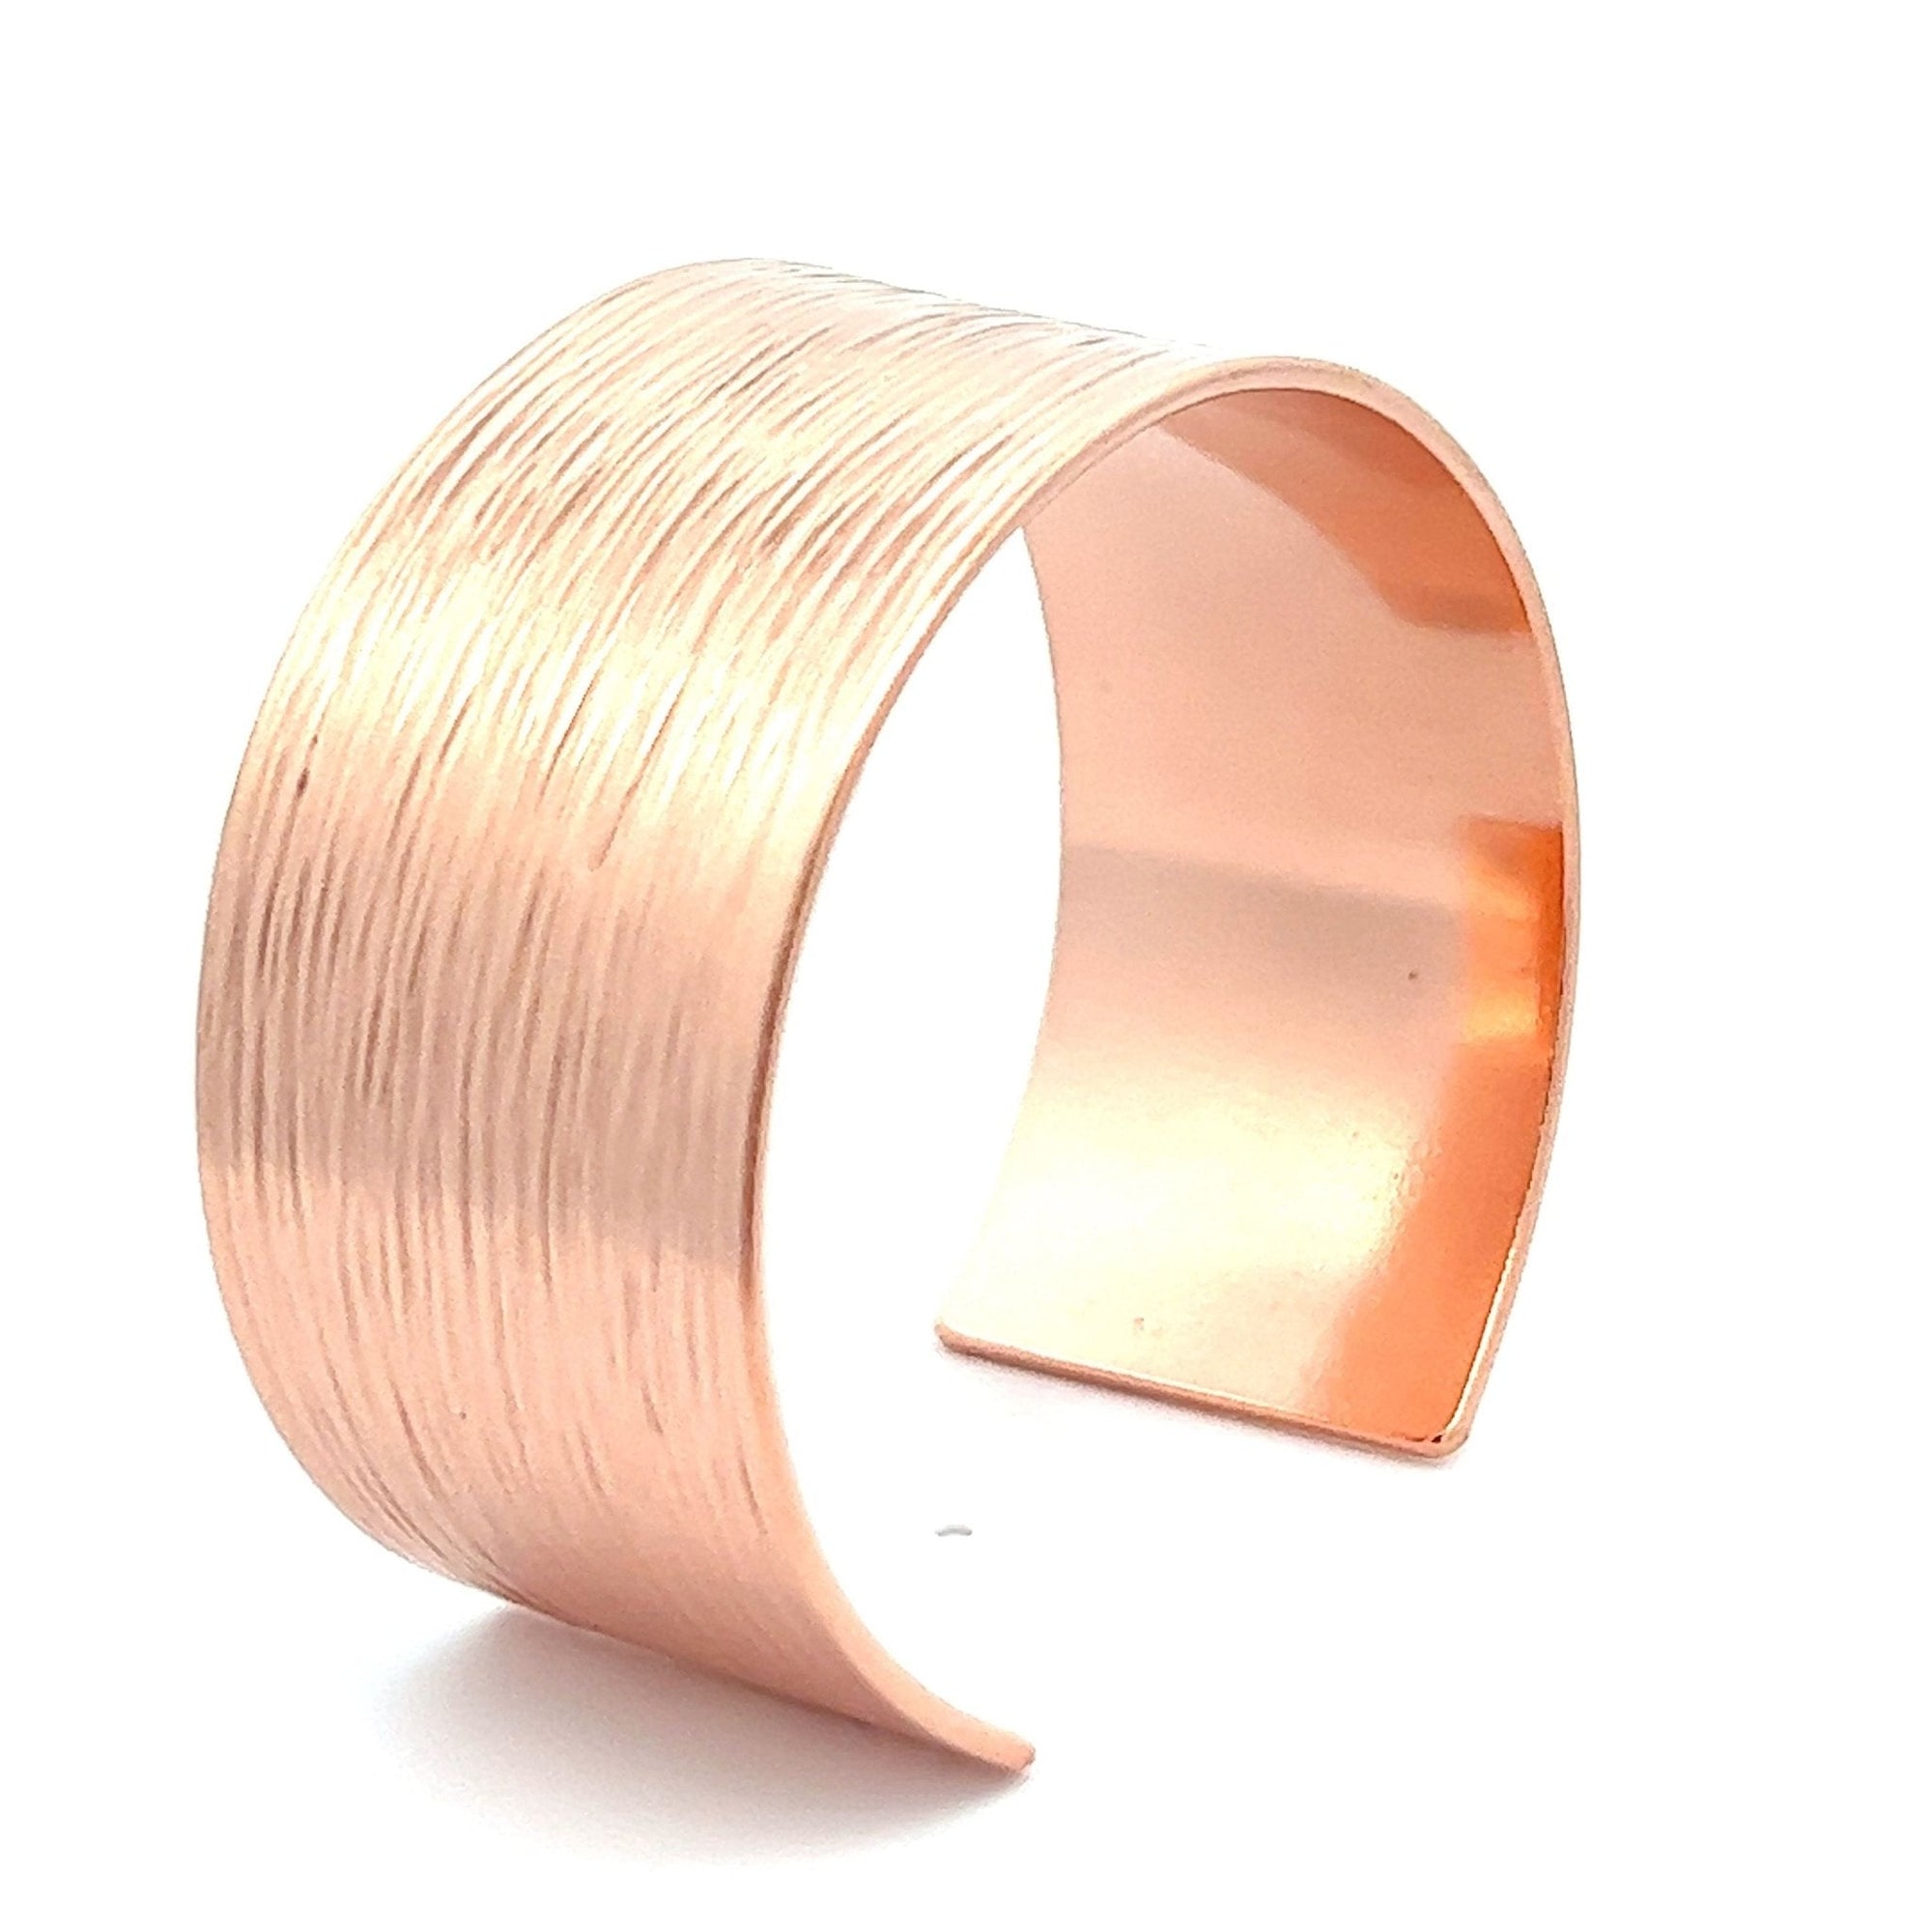 1 Inch Wide Bark Copper Cuff Bracelet - Solid Copper Cuff